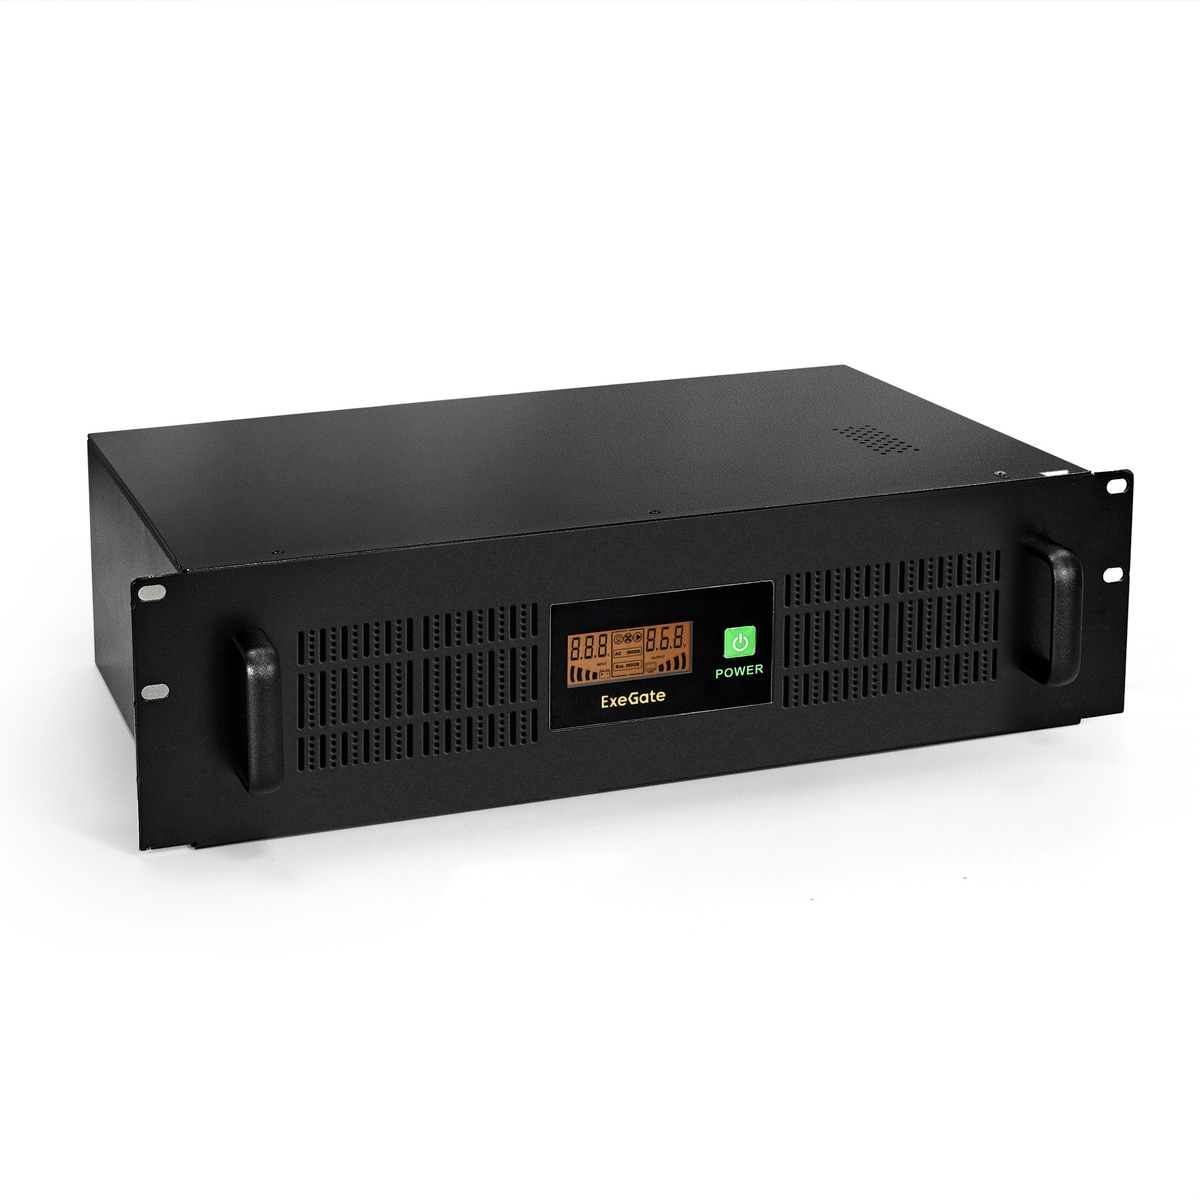  ExeGate ServerRM UNL-1500.LCD.AVR.EURO.RJ.USB.3U